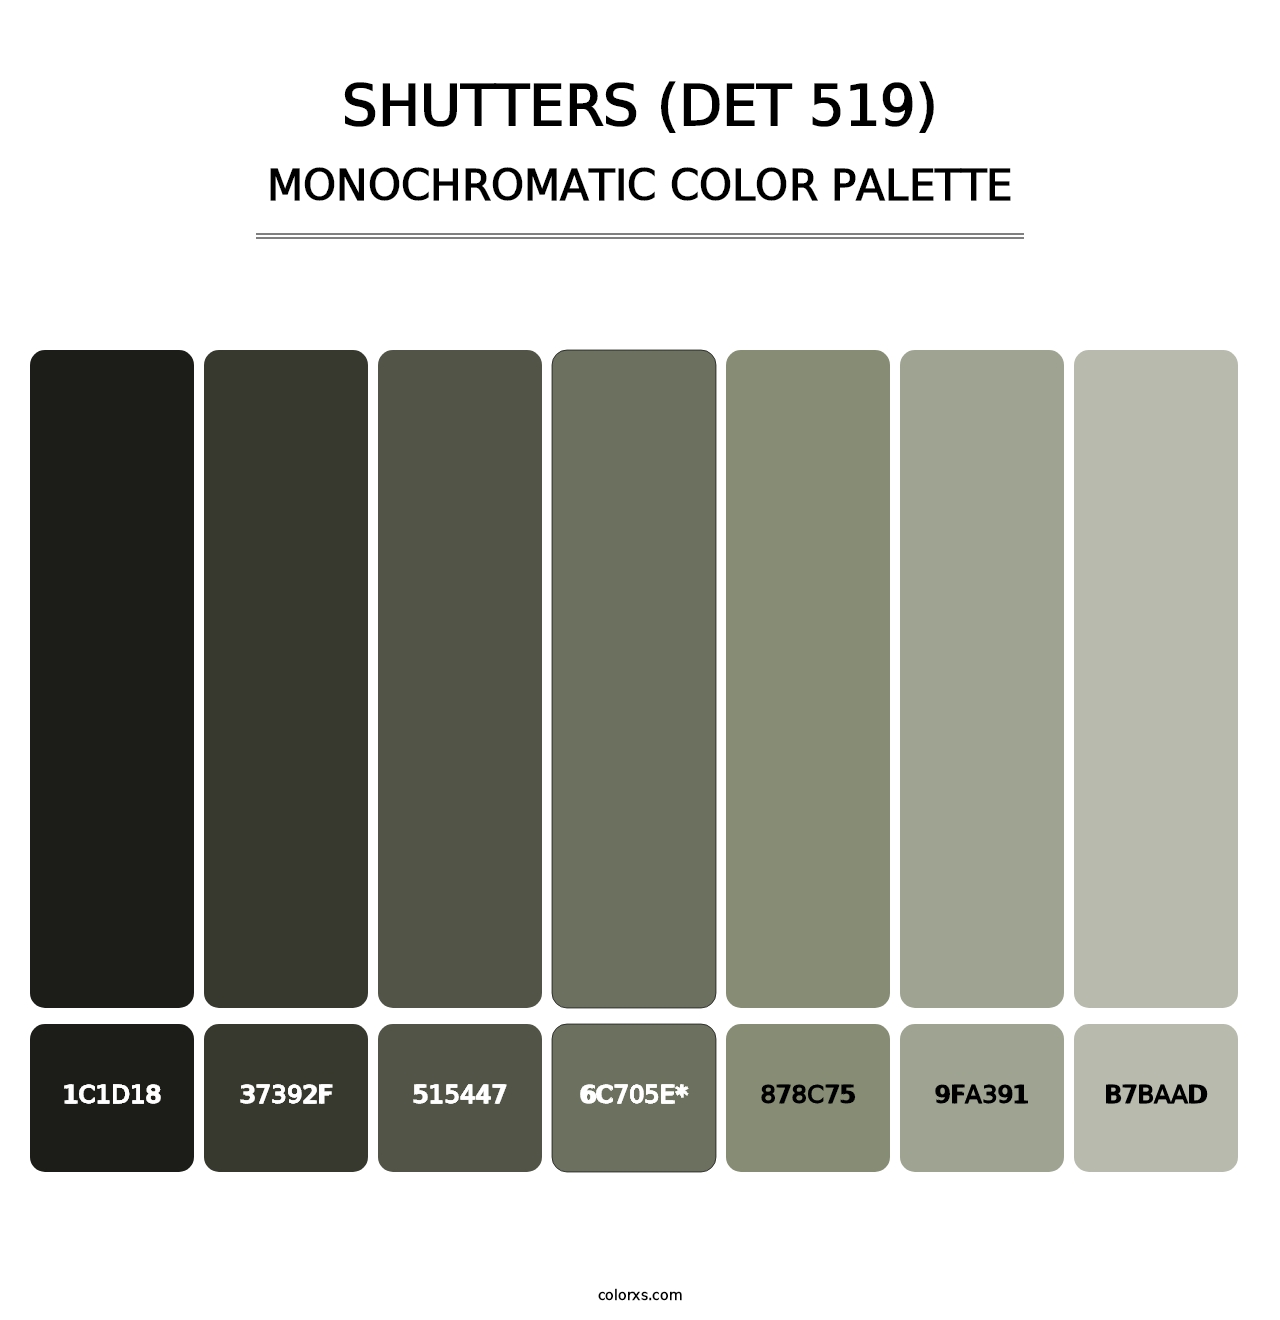 Shutters (DET 519) - Monochromatic Color Palette